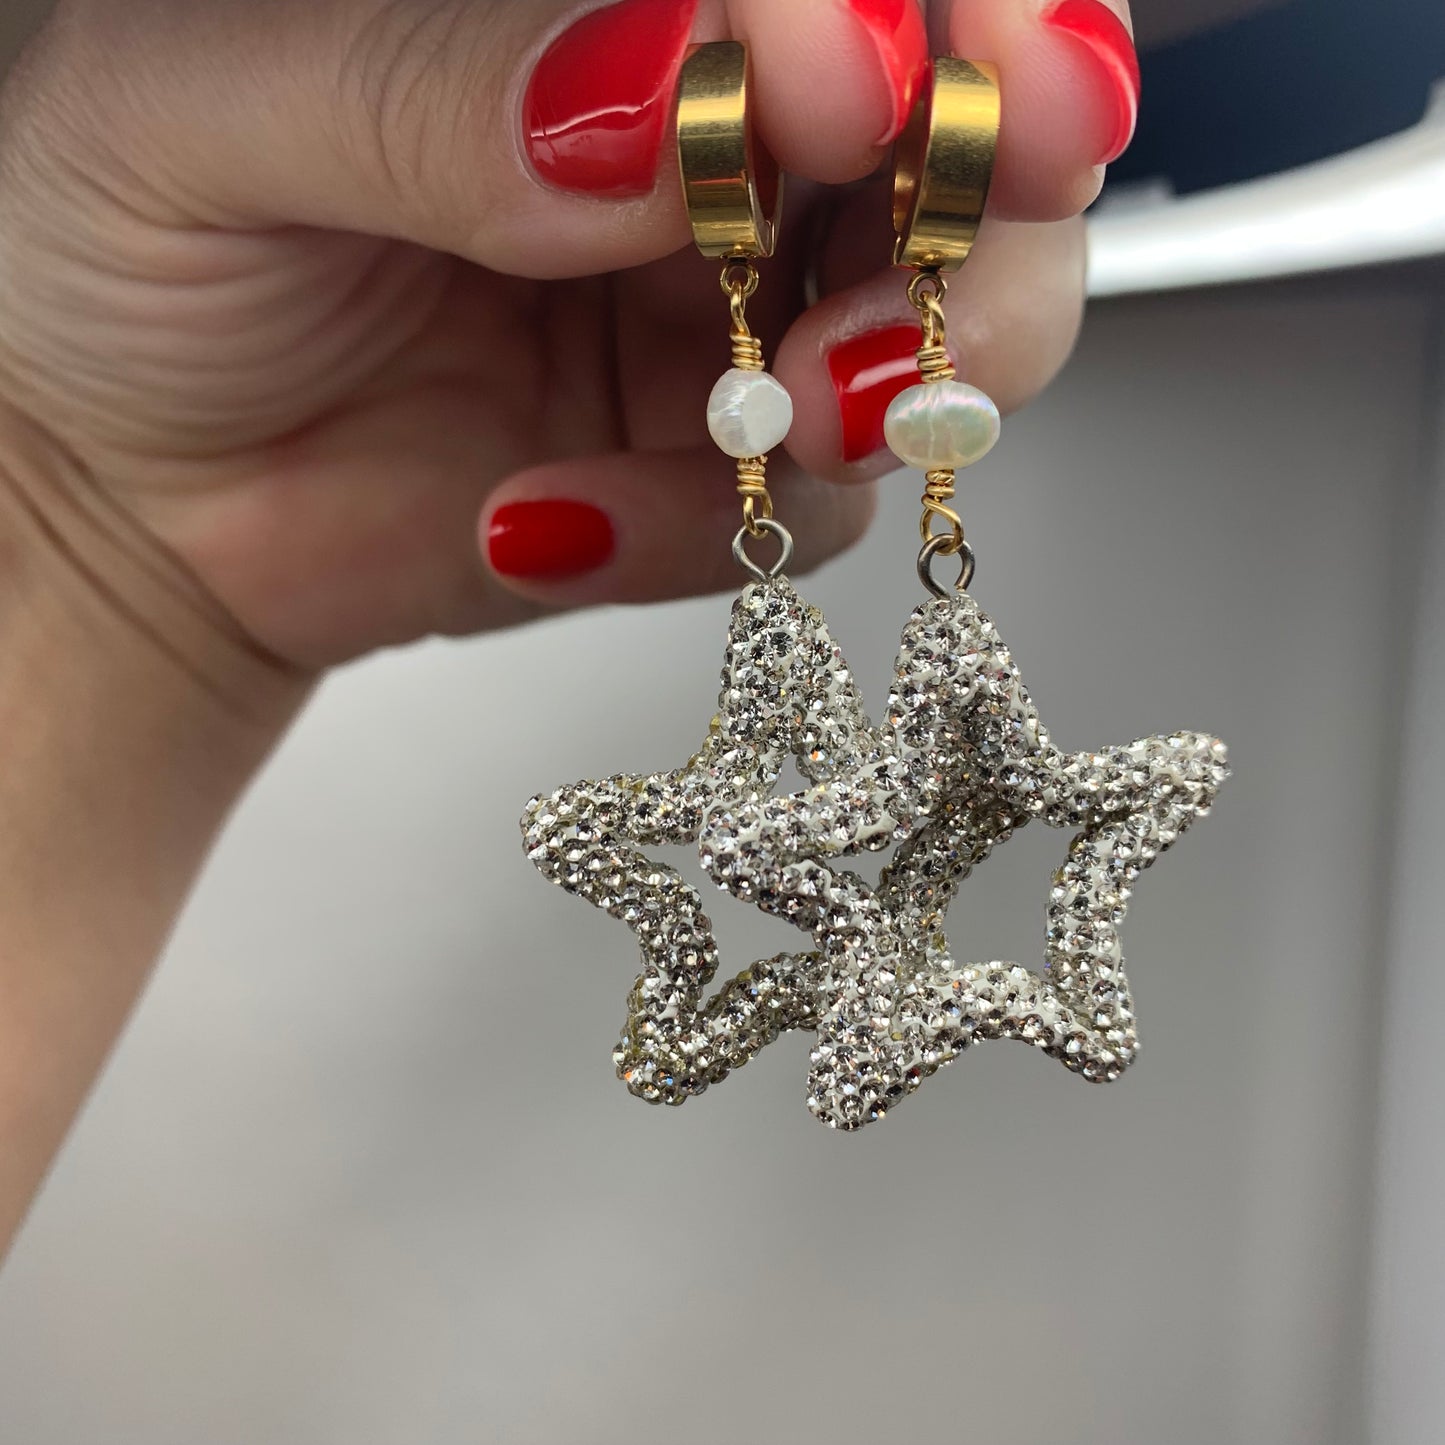 Erika Williner Designs - North Star Earrings